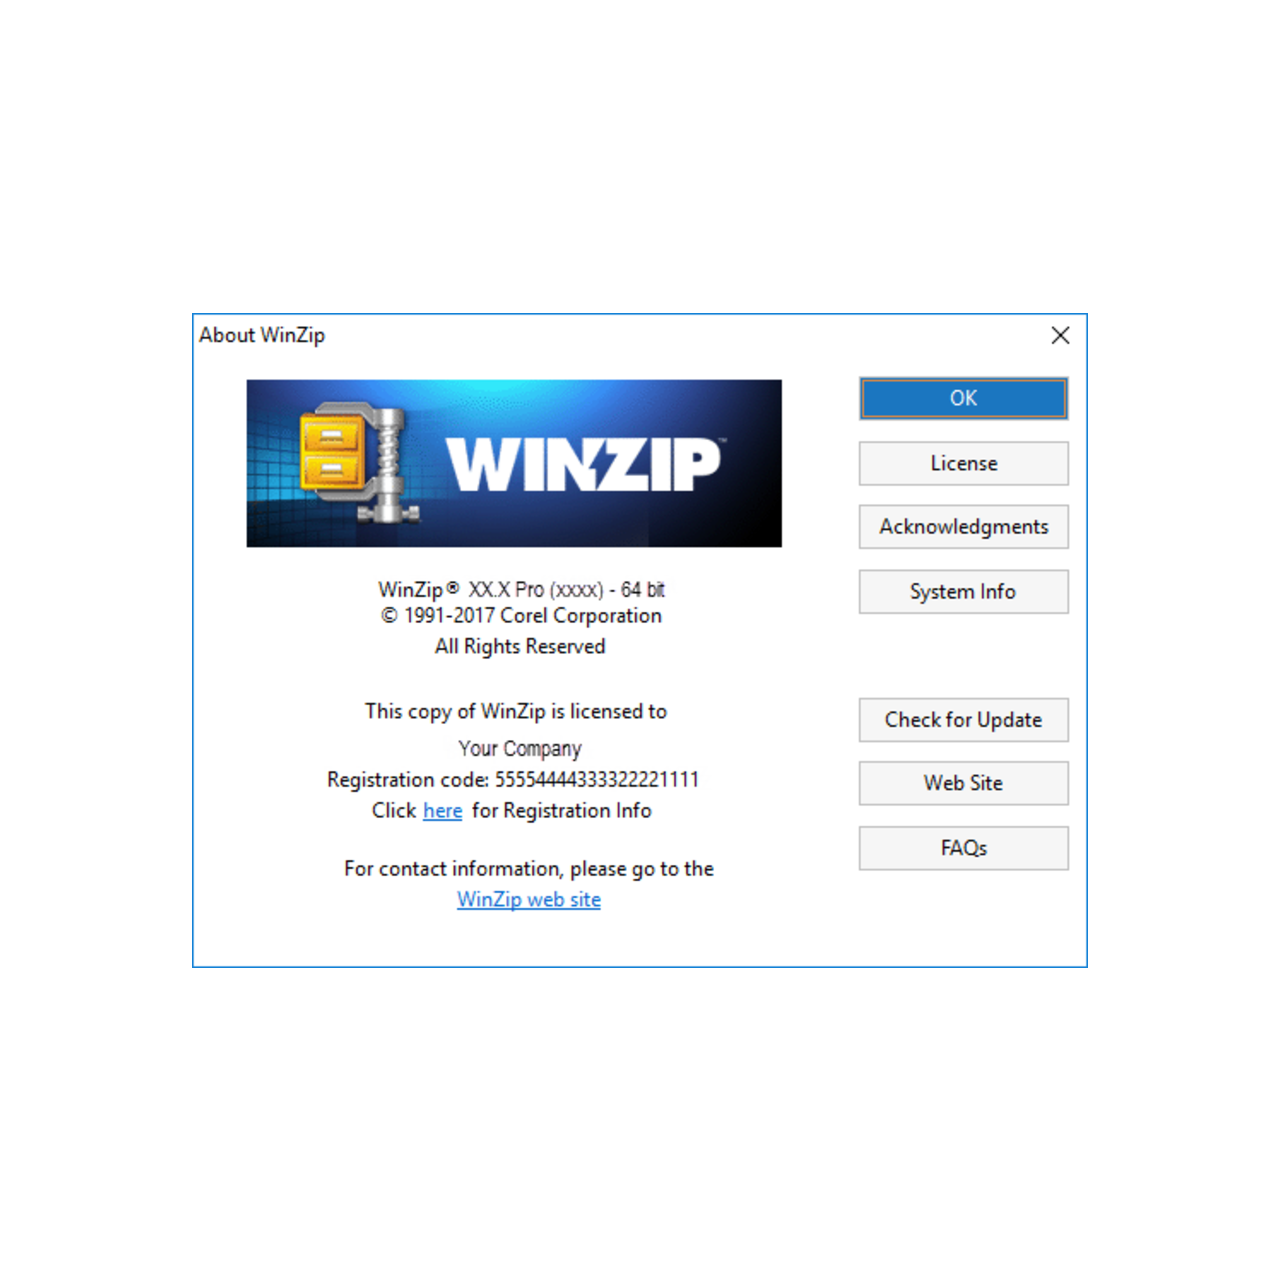 winzip alternative download links